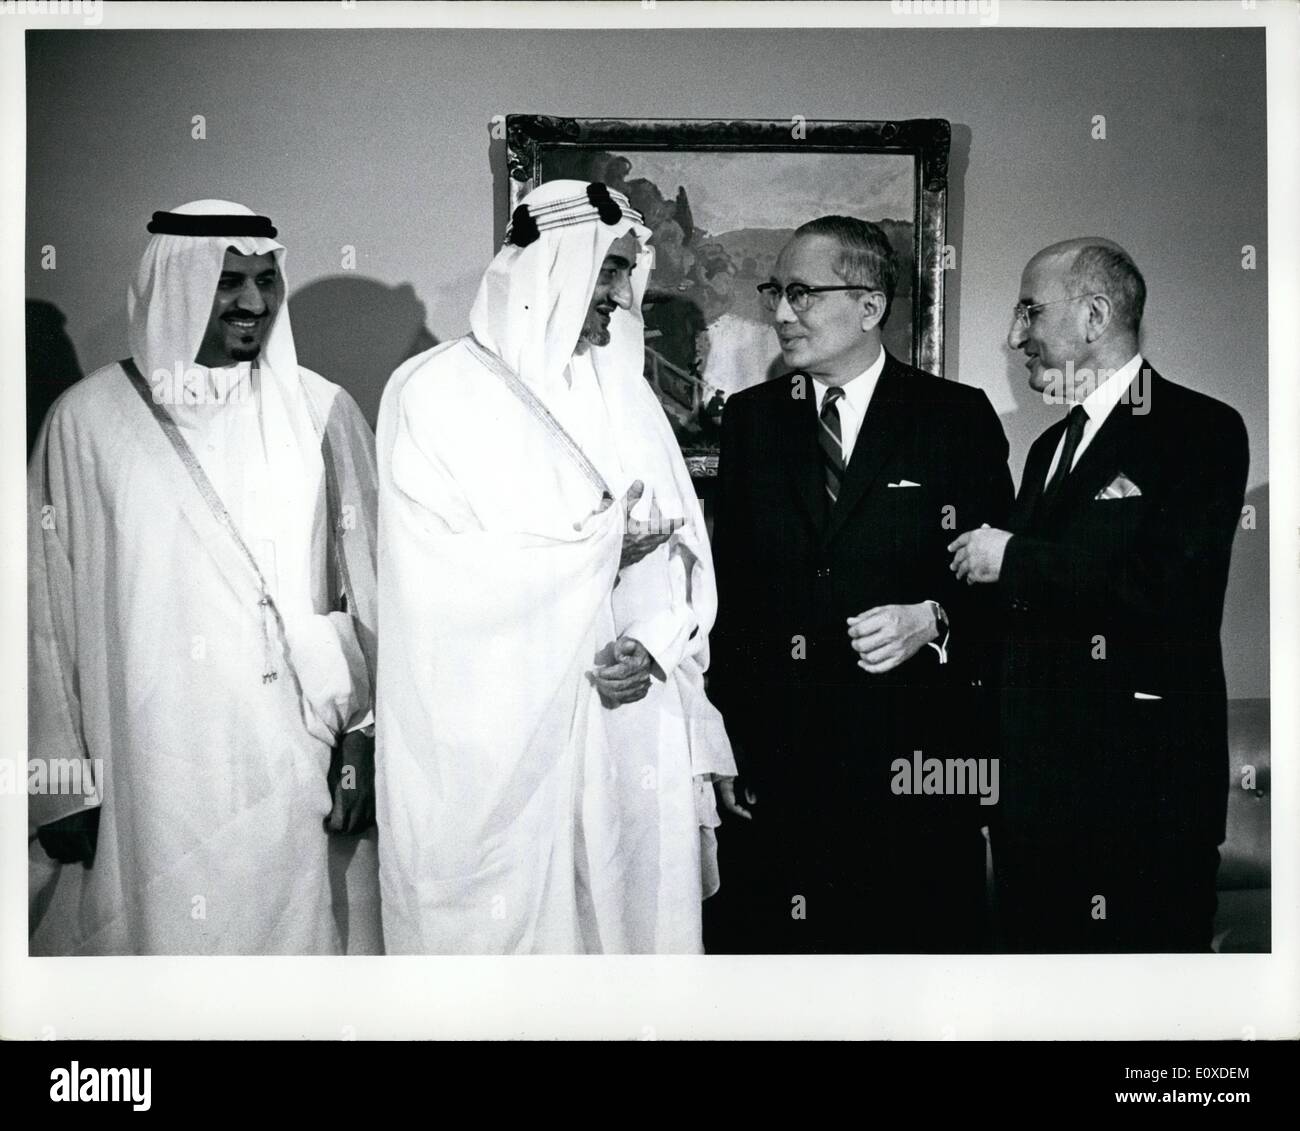 Giugno 06, 1966 - Sua maestà Faisal bin Abdulaziz visita la sede dell ONU: Sua Maestà Faisal bin Abdulaziz, re di Arabia Saudita, pagato una visita ufficiale alla sede delle Nazioni Unite di oggi. Egli era accompagnato nella sua visita da parte del ministro della Difesa, il Principe Sultano bin Abdulaziz; un consigliere reale; e il Rappresentante permanente aggiunto della Arabia saudita alle Nazioni Unite, Jamil M. Baroody, durante la sua visita, re Faisal conferito con il Segretario generale e fu suo ospite a pranzo. King Faisal conversando con Secretary-Genral U Thant Foto Stock